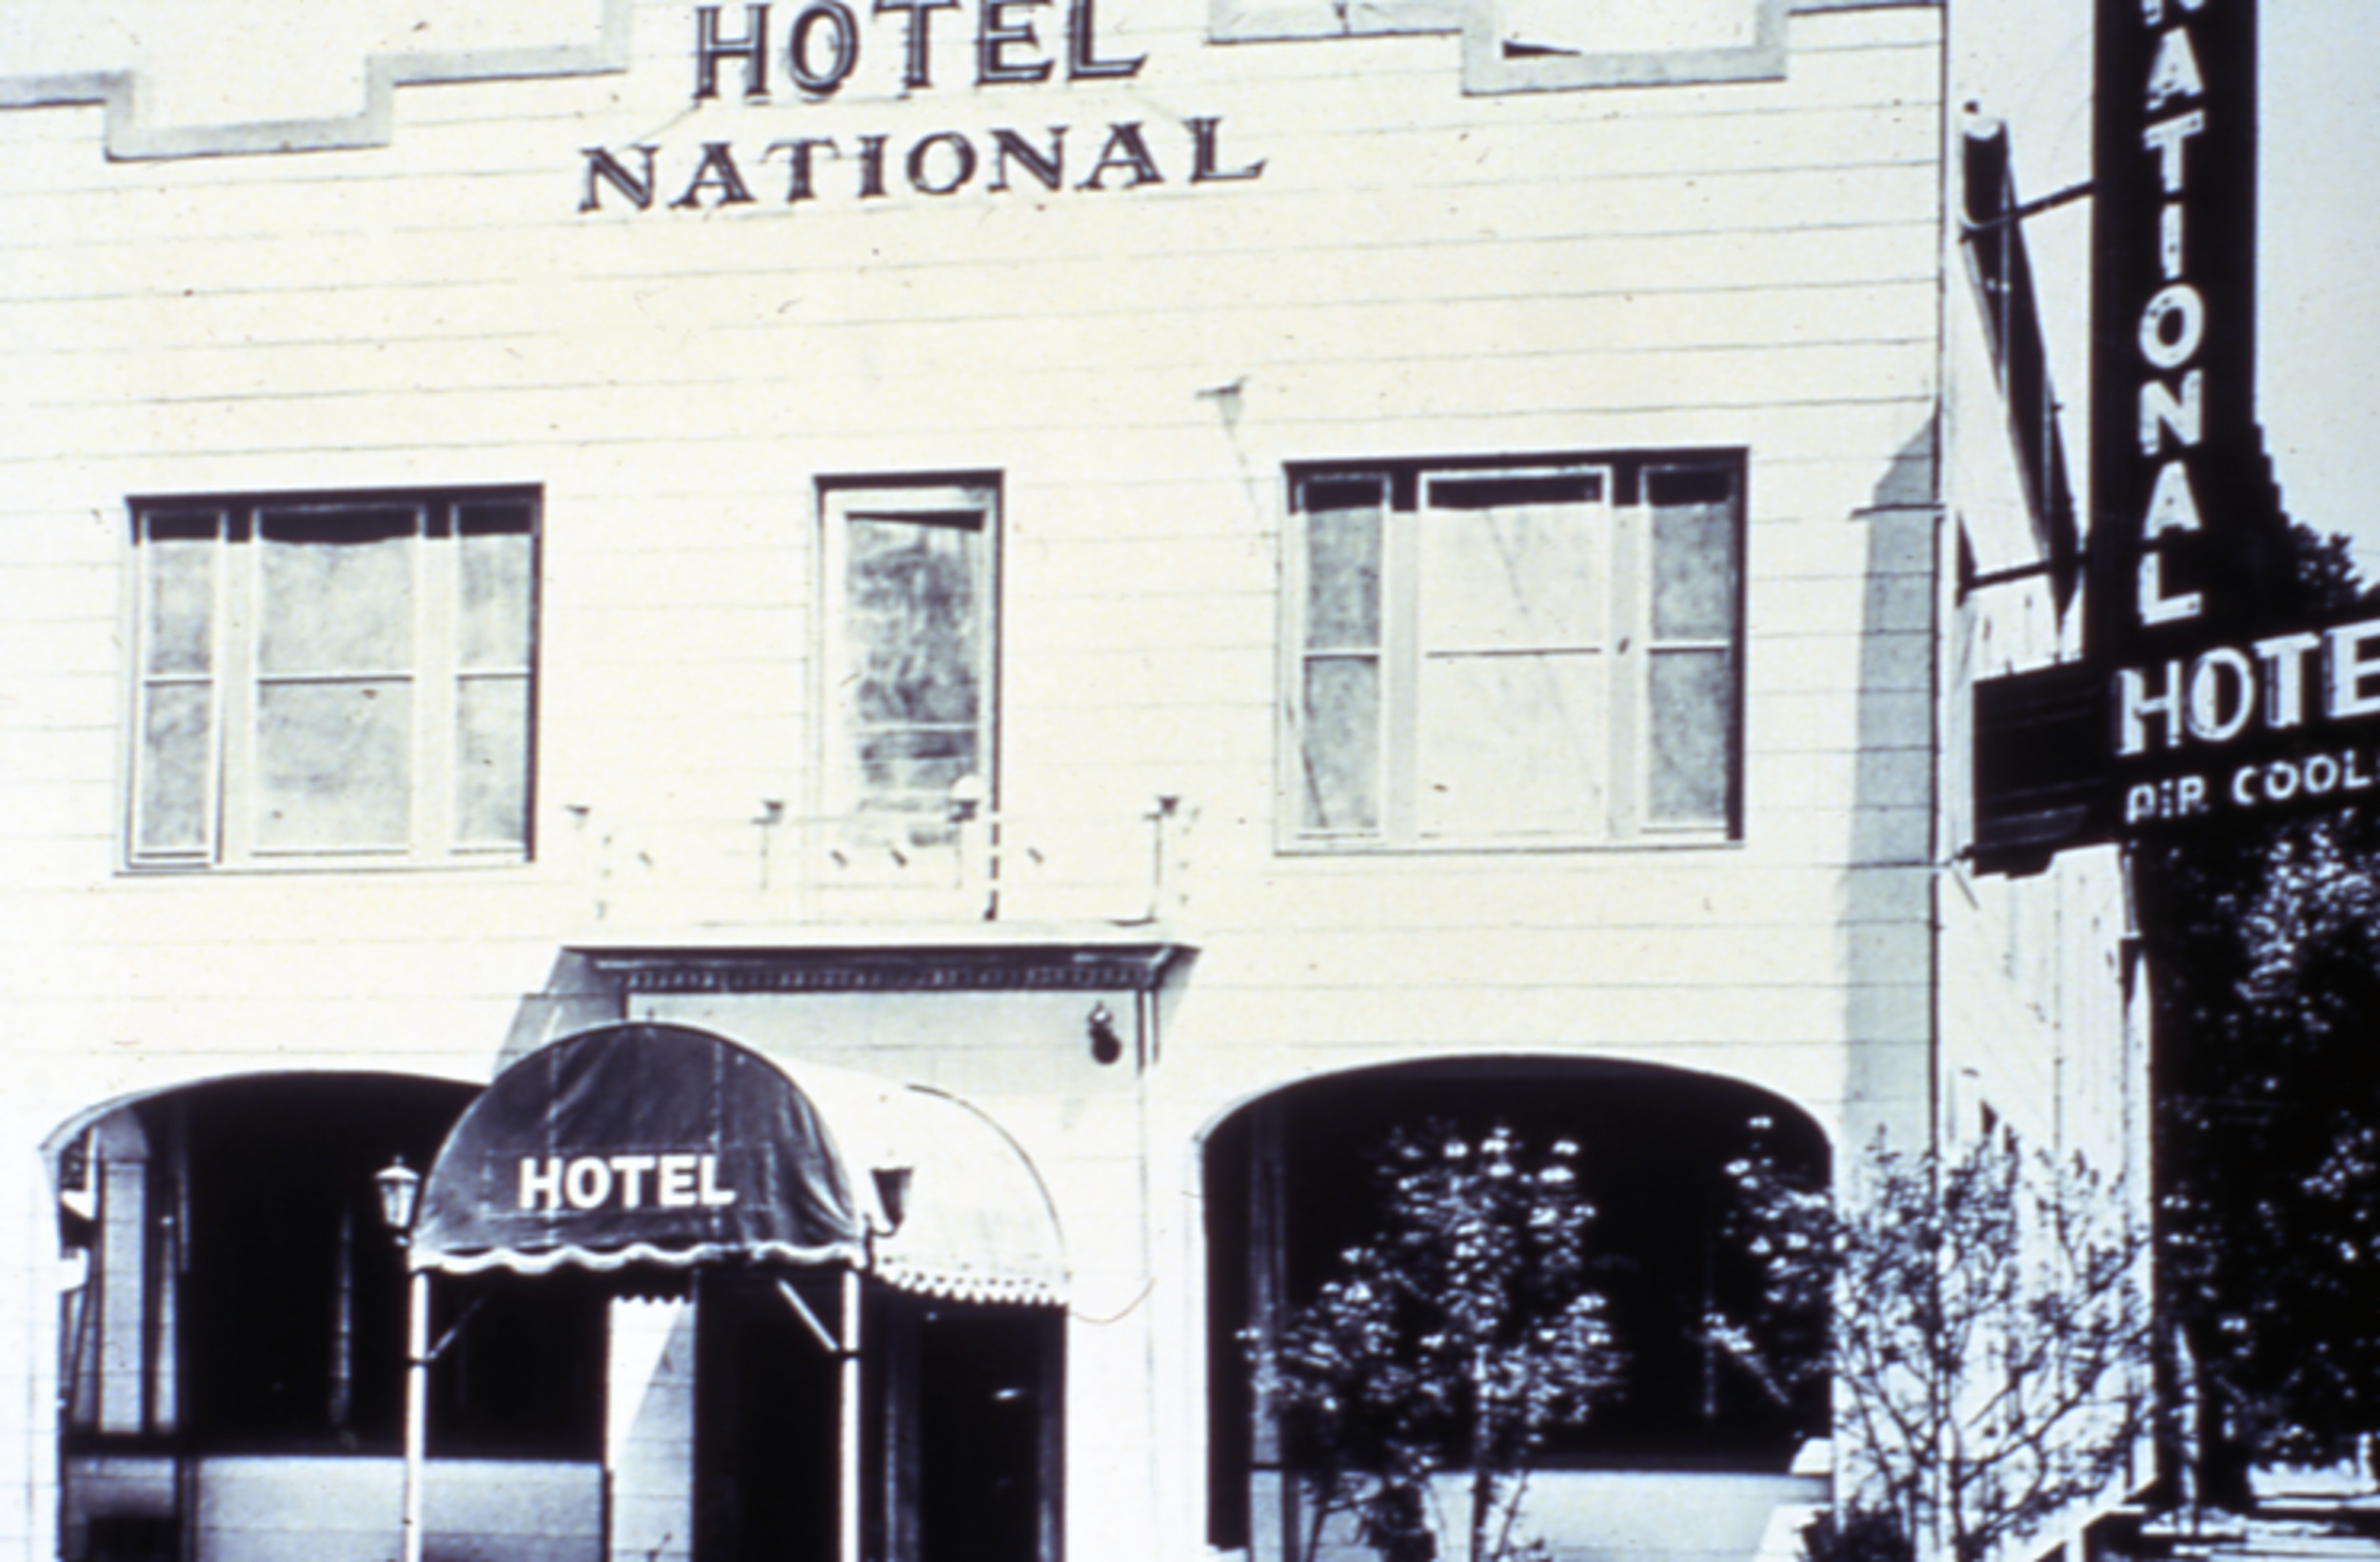 Slide of Hotel National, Las Vegas, after 1923